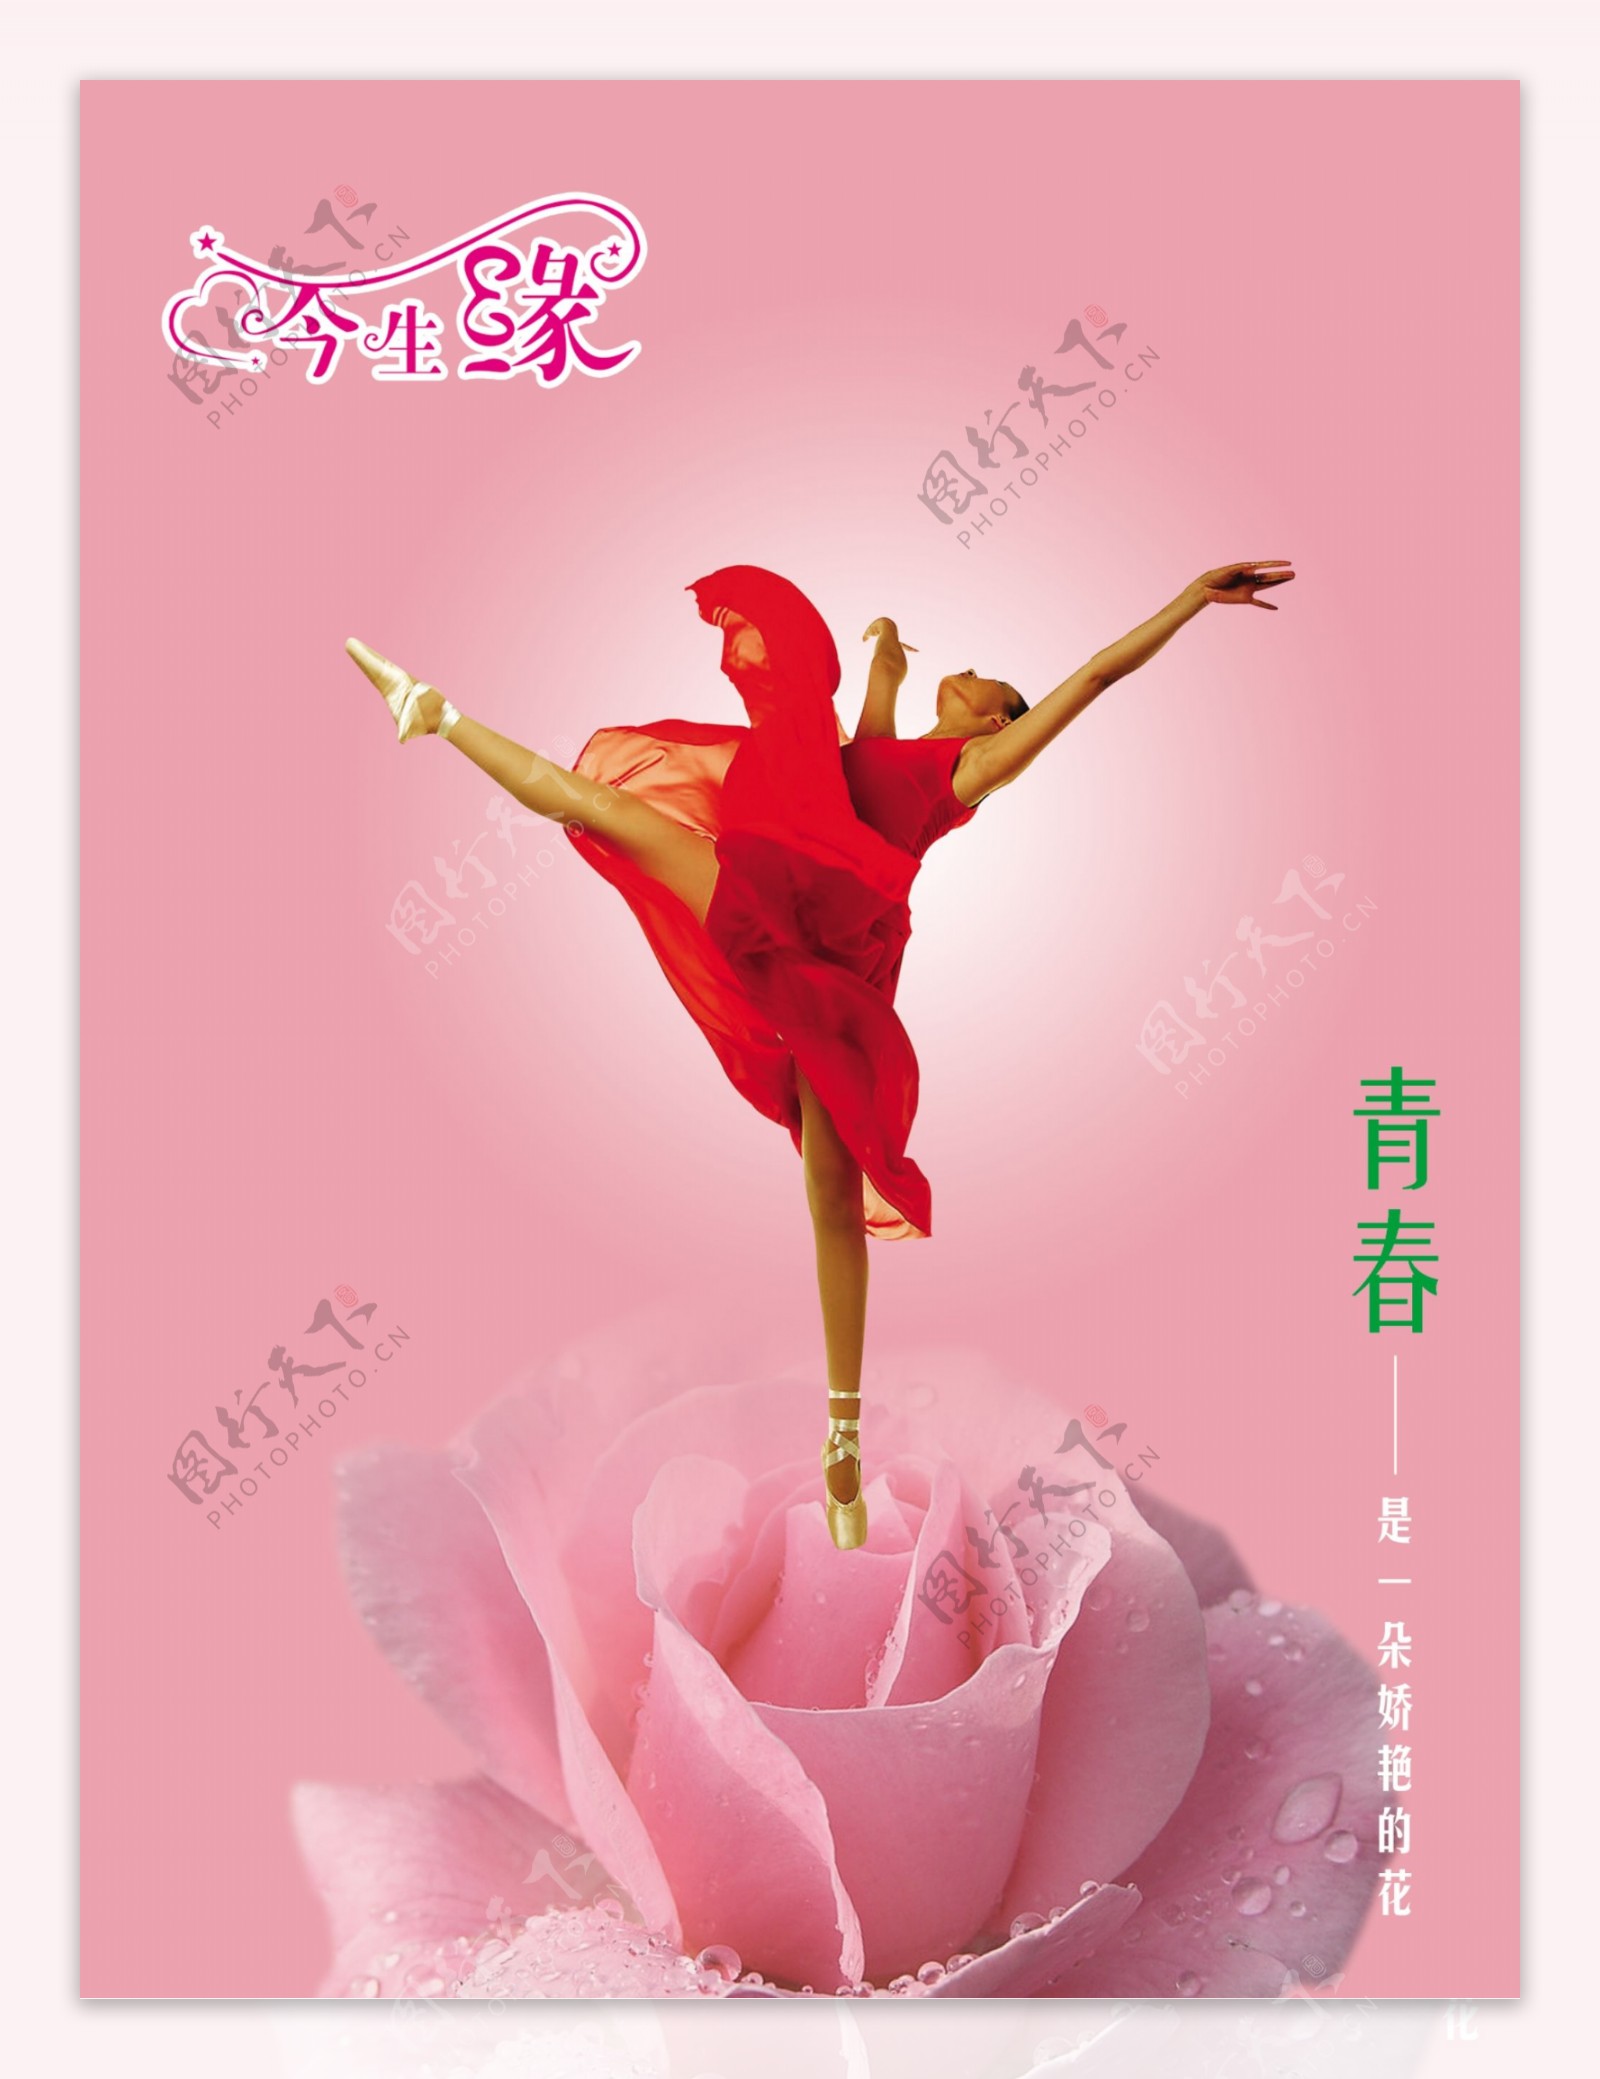 龙腾广告平面广告PSD分层素材源文件首饰浪漫今生缘舞蹈青春